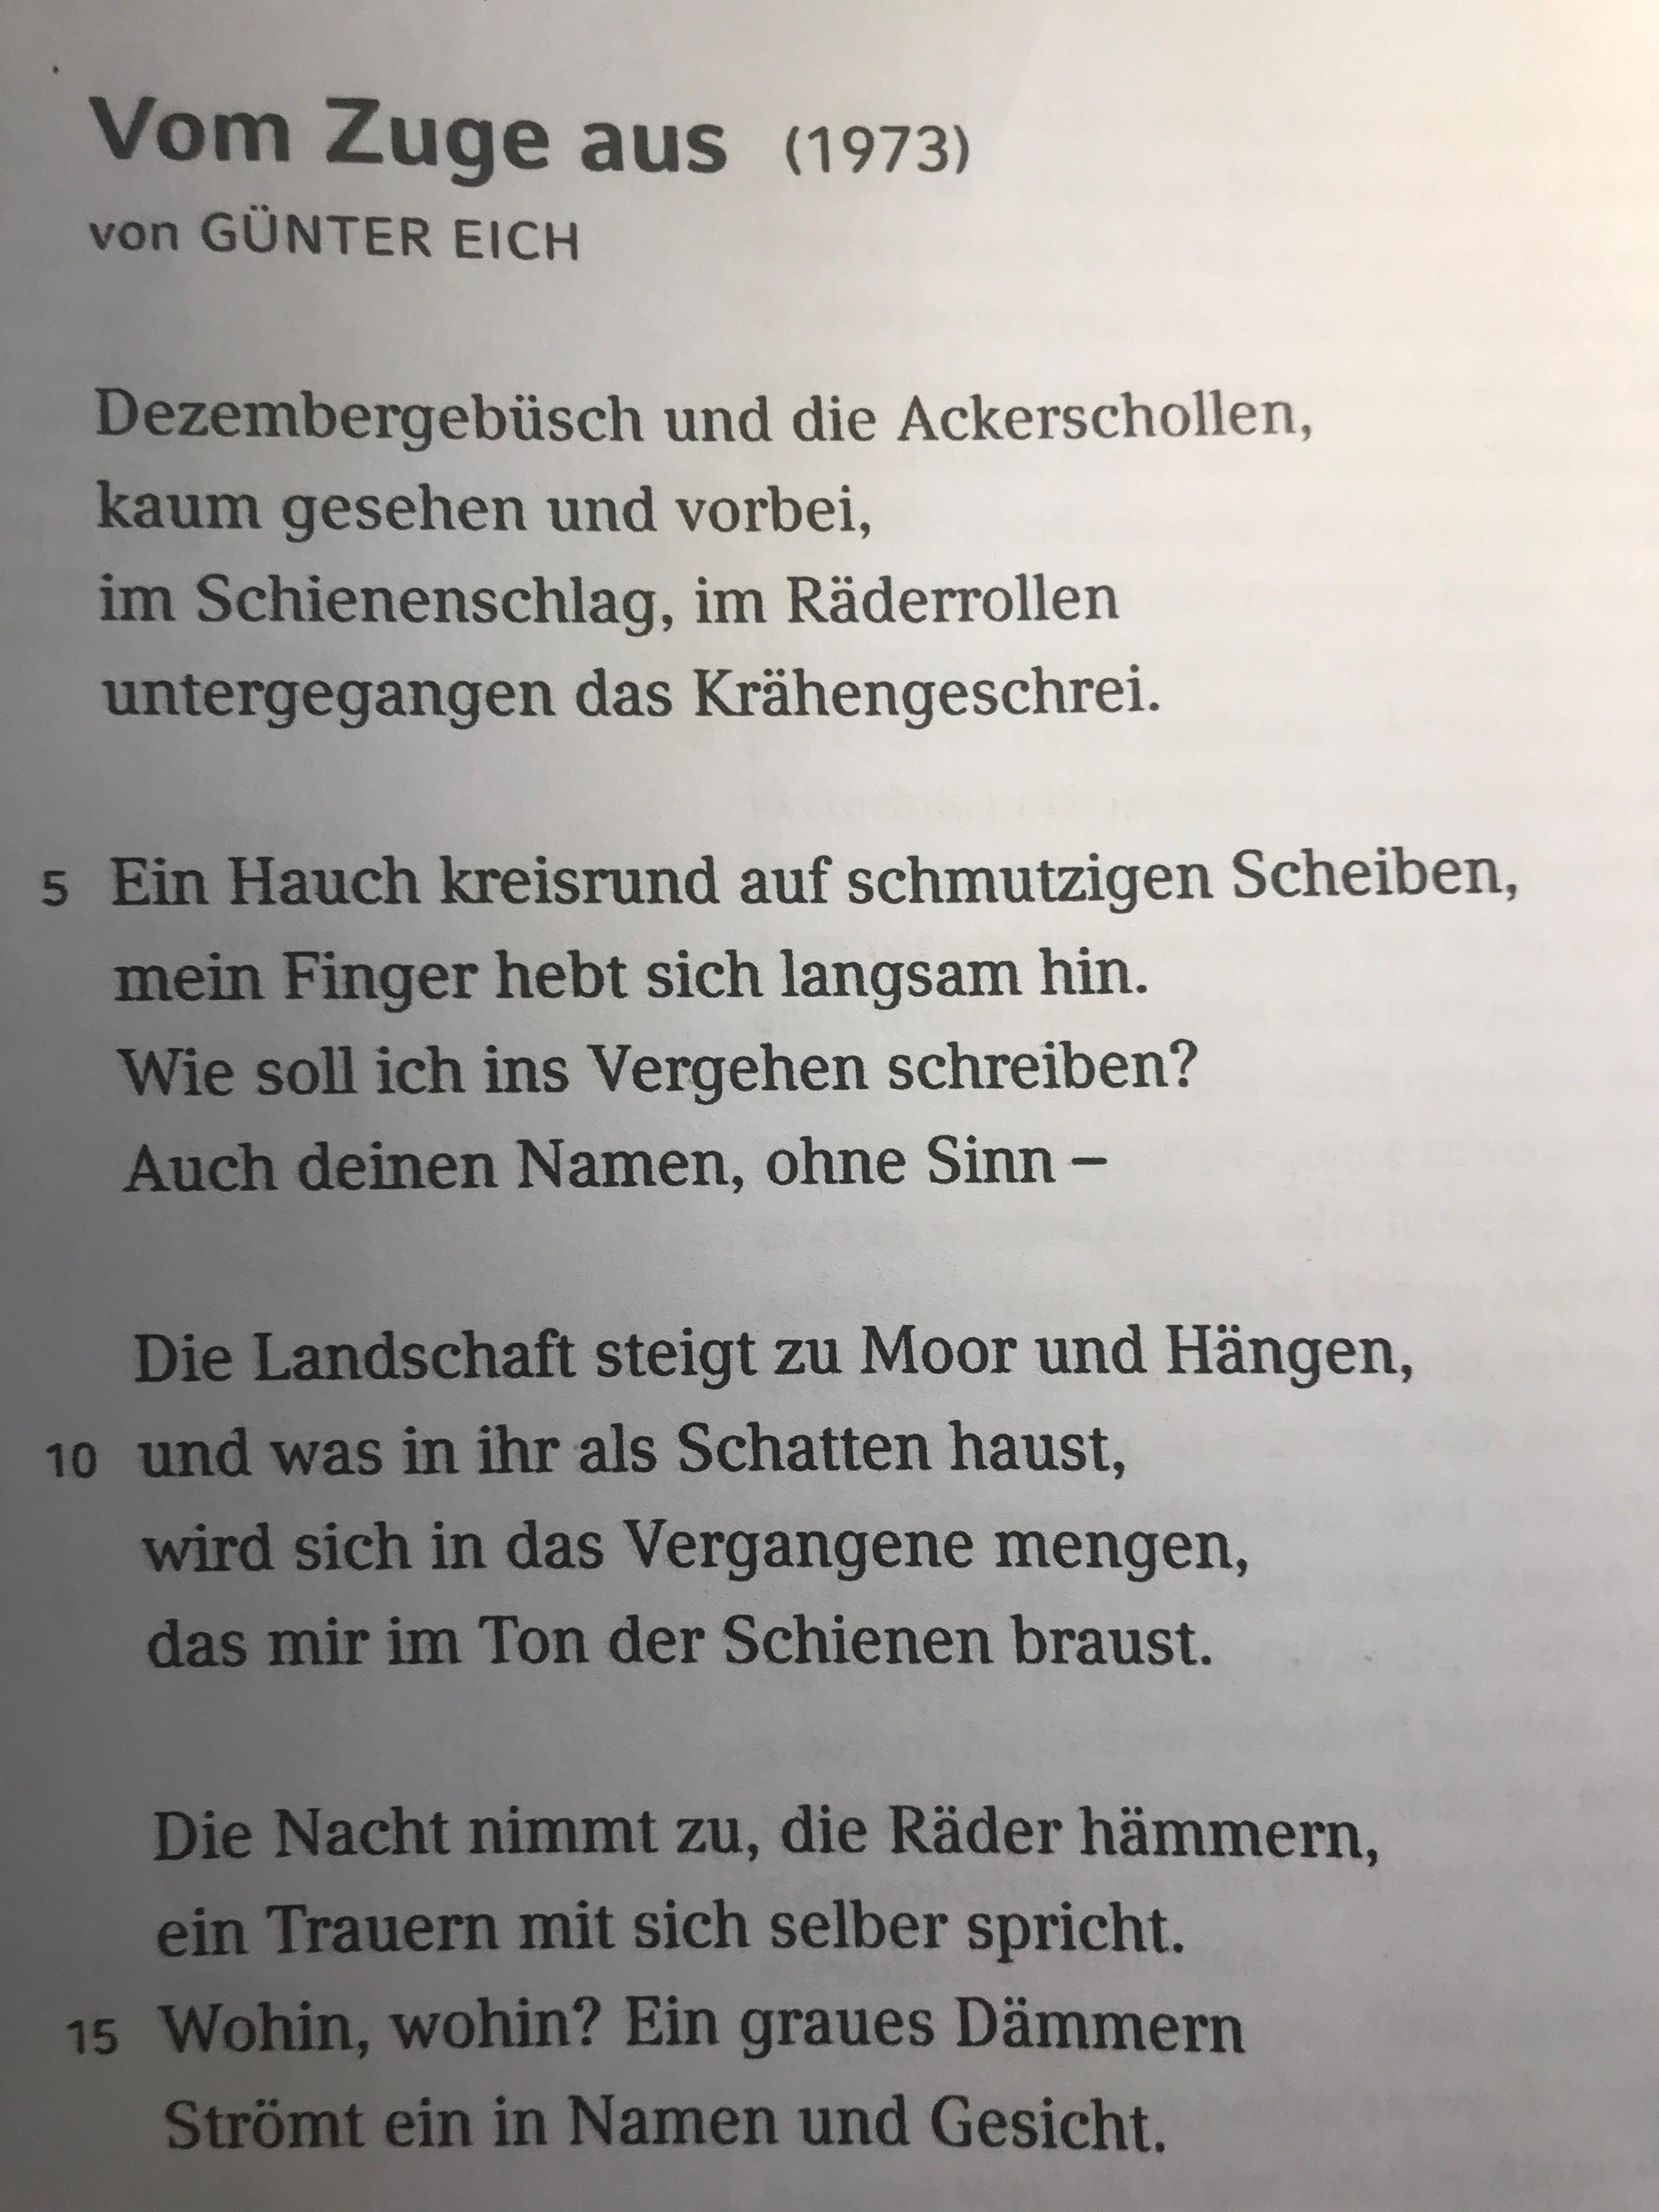 Deutsch Unterricht - Günter Eich Gedicht? (Schule, Literatur)